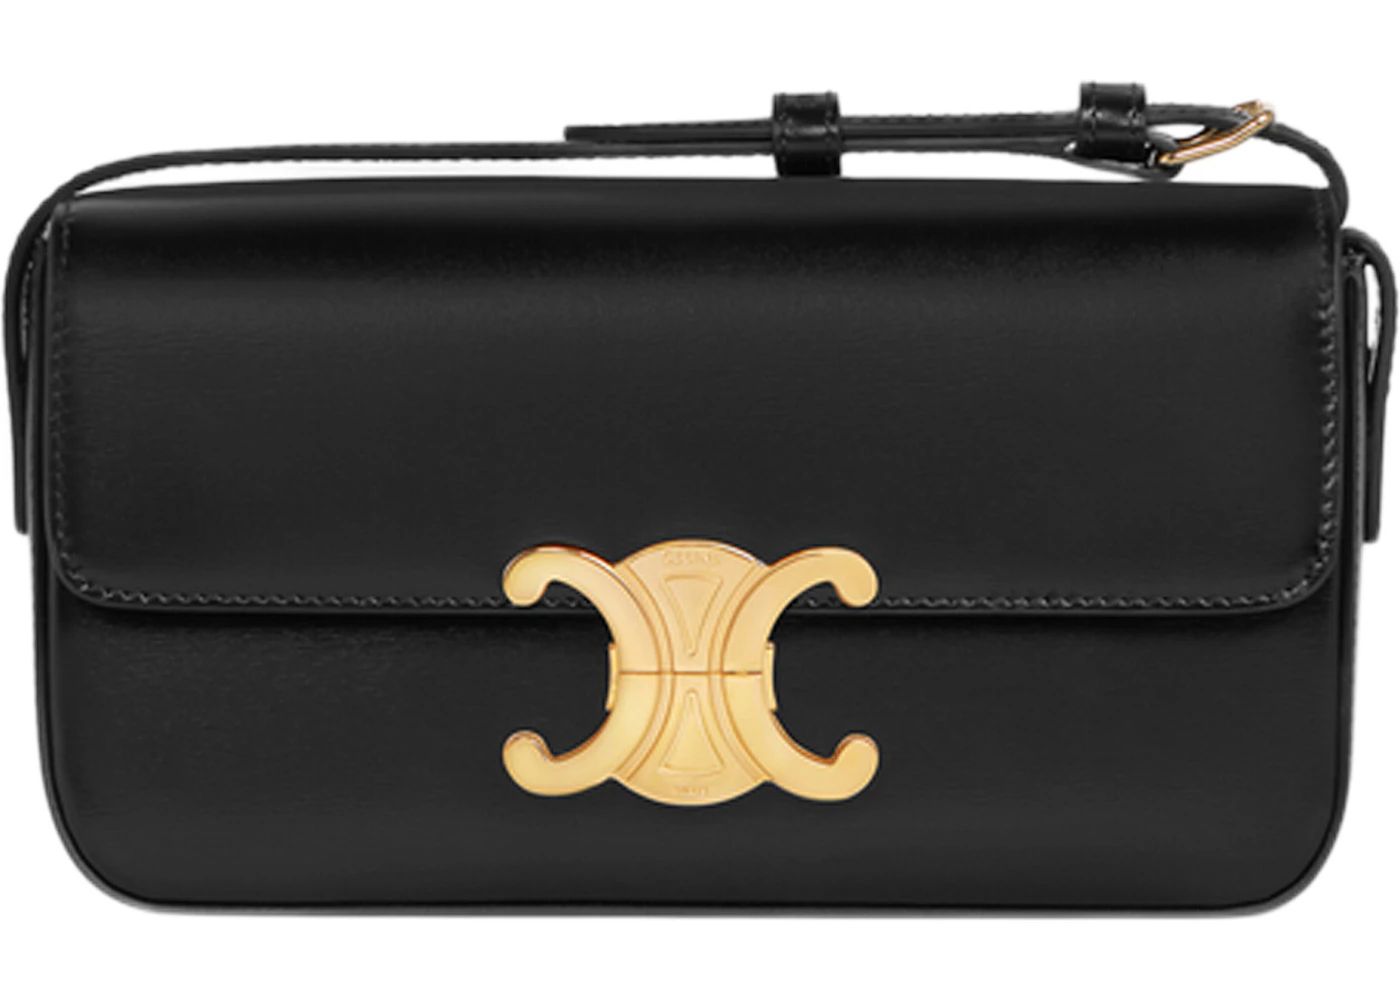 Celine Shoulder Bag Claude in Shiny Calfskin Leather Black | StockX